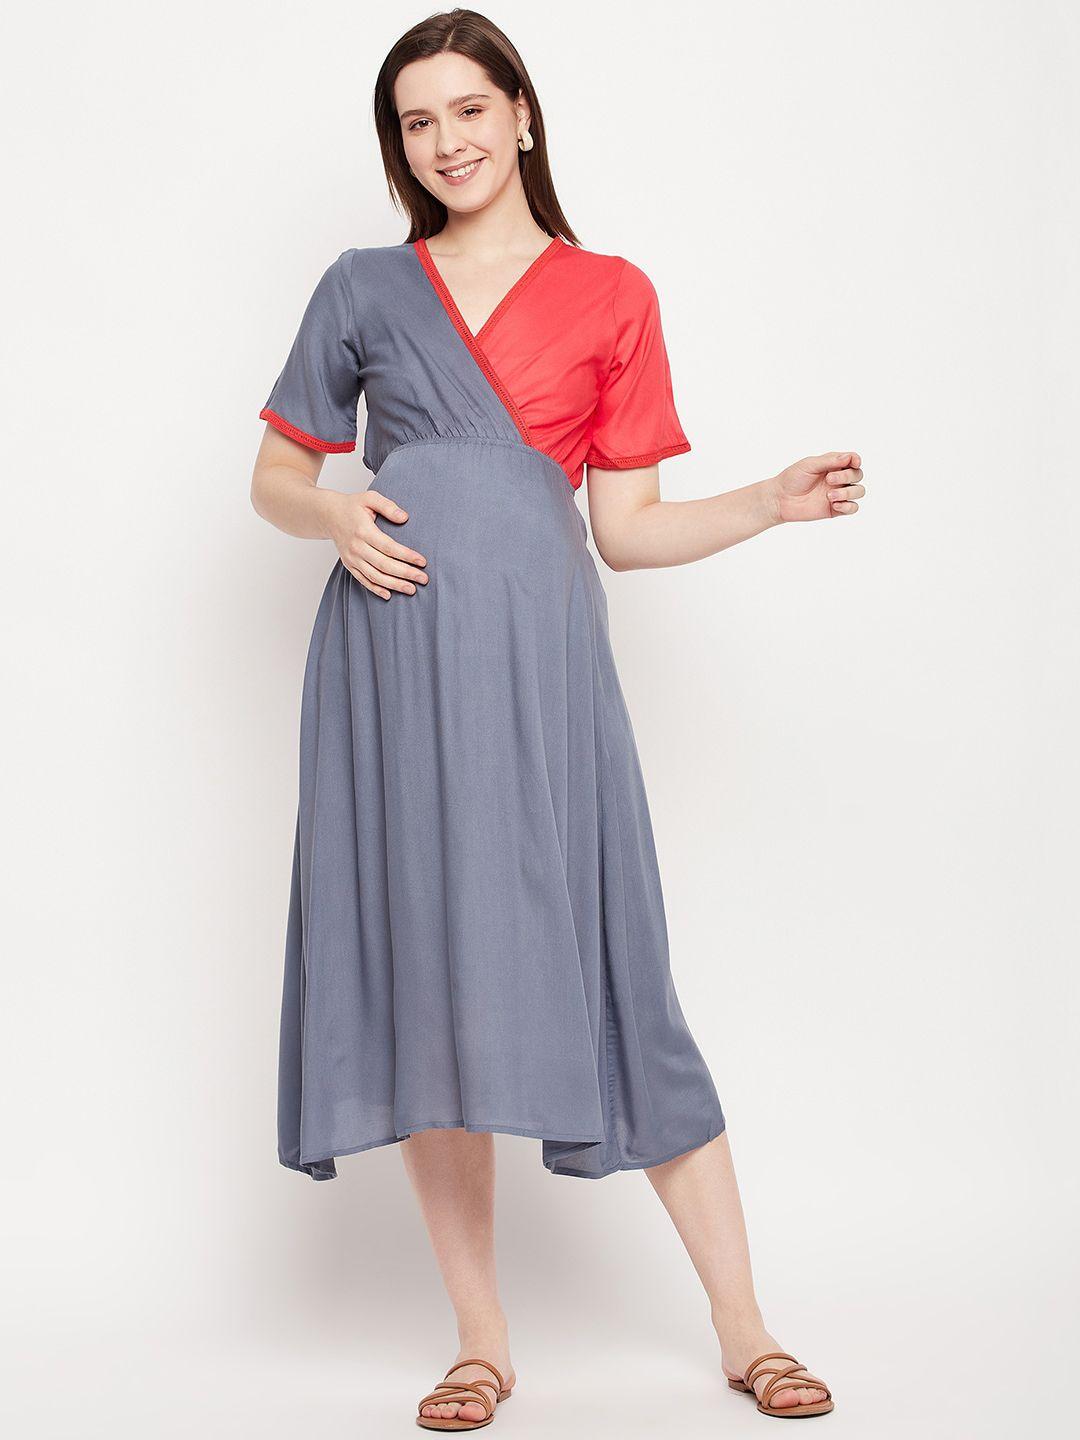 nabia grey & red colourblocked v-neck maternity wrap dress